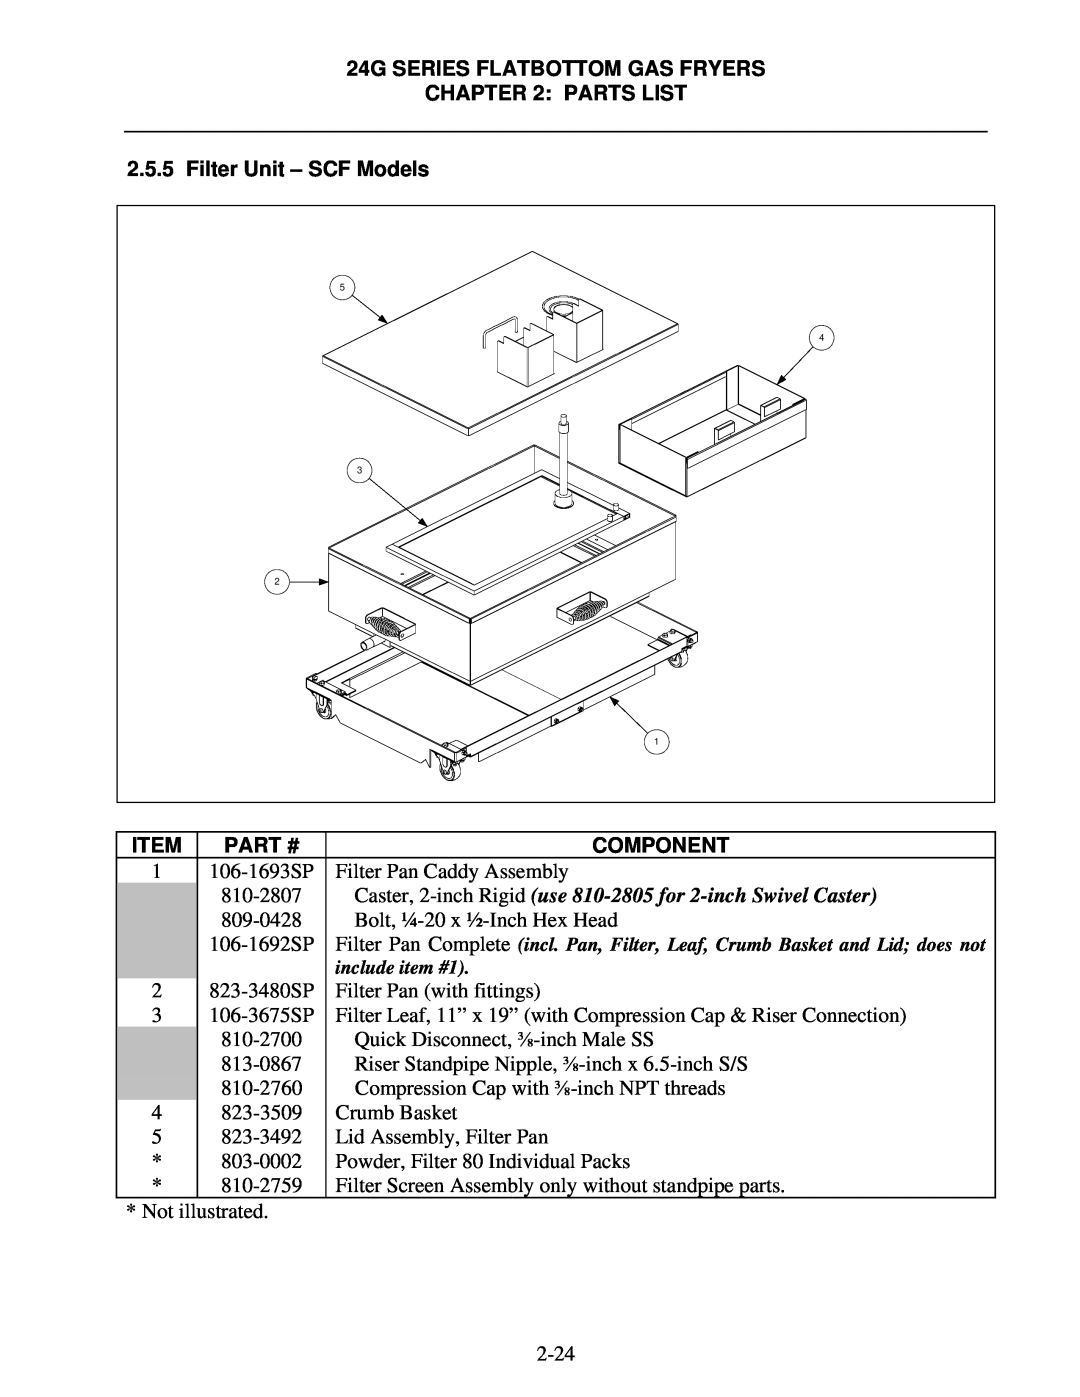 Frymaster 1824/2424G manual Filter Unit - SCF Models, Caster, 2-inch Rigid use 810-2805 for 2-inch Swivel Caster, Part # 